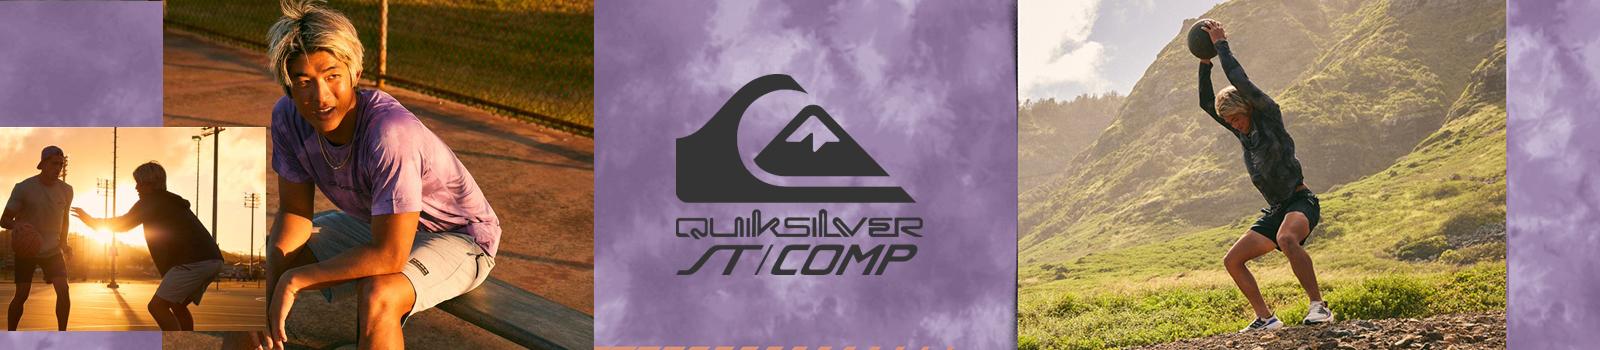 Quiksilver ST/COMP